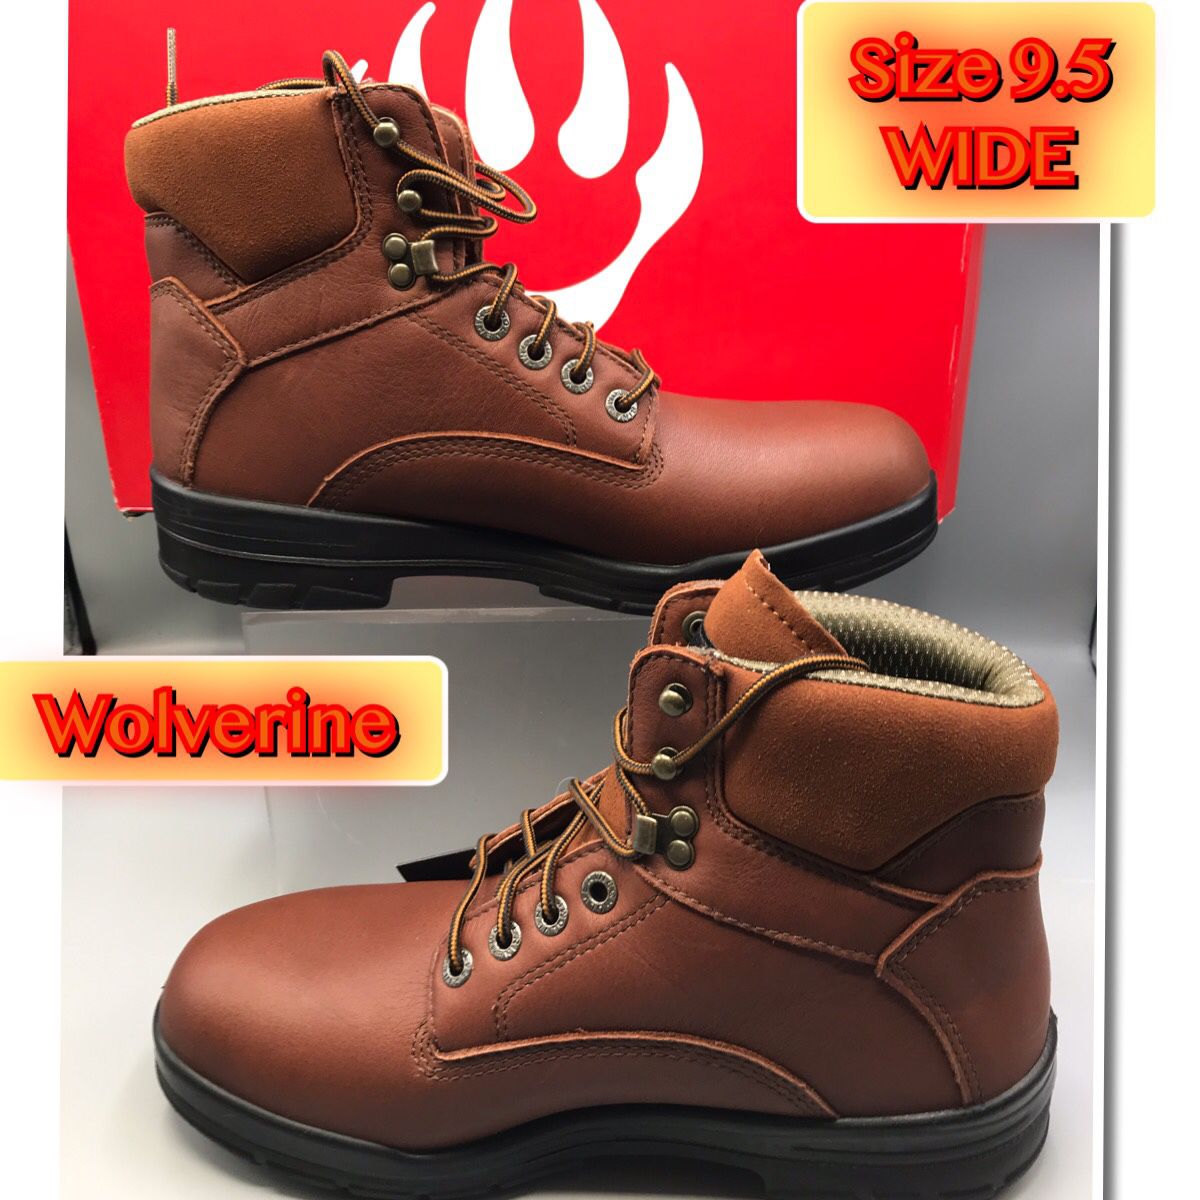 Wolverine Men’s Work Boots W10104 Size 9.5Wide